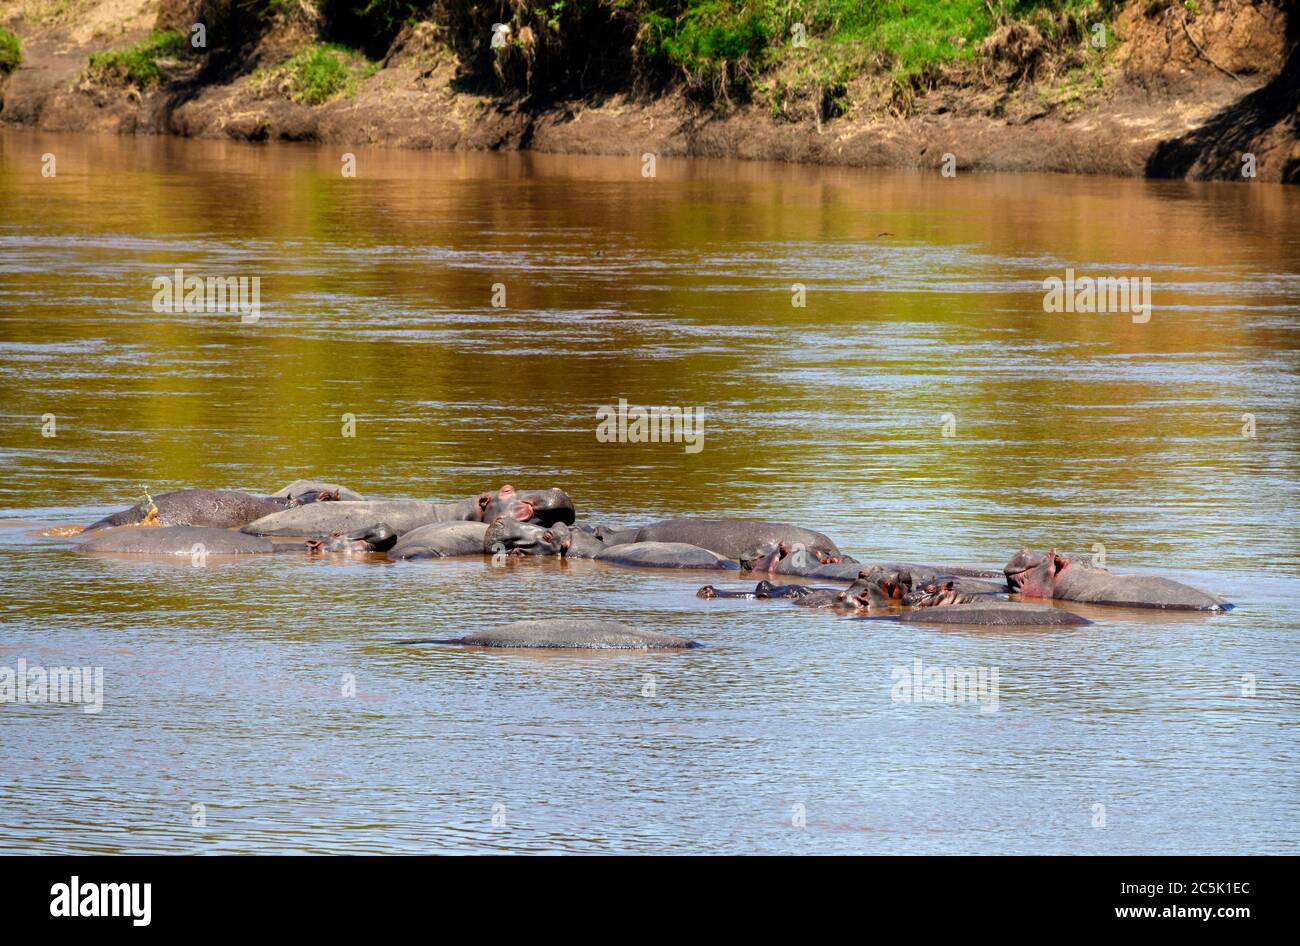 Common Hippopotamus (Hippopotamus amphibius). Nilpferde im Mara River, Mara Triangle, Masai Mara National Reserve, Kenia, Ostafrika Stockfoto